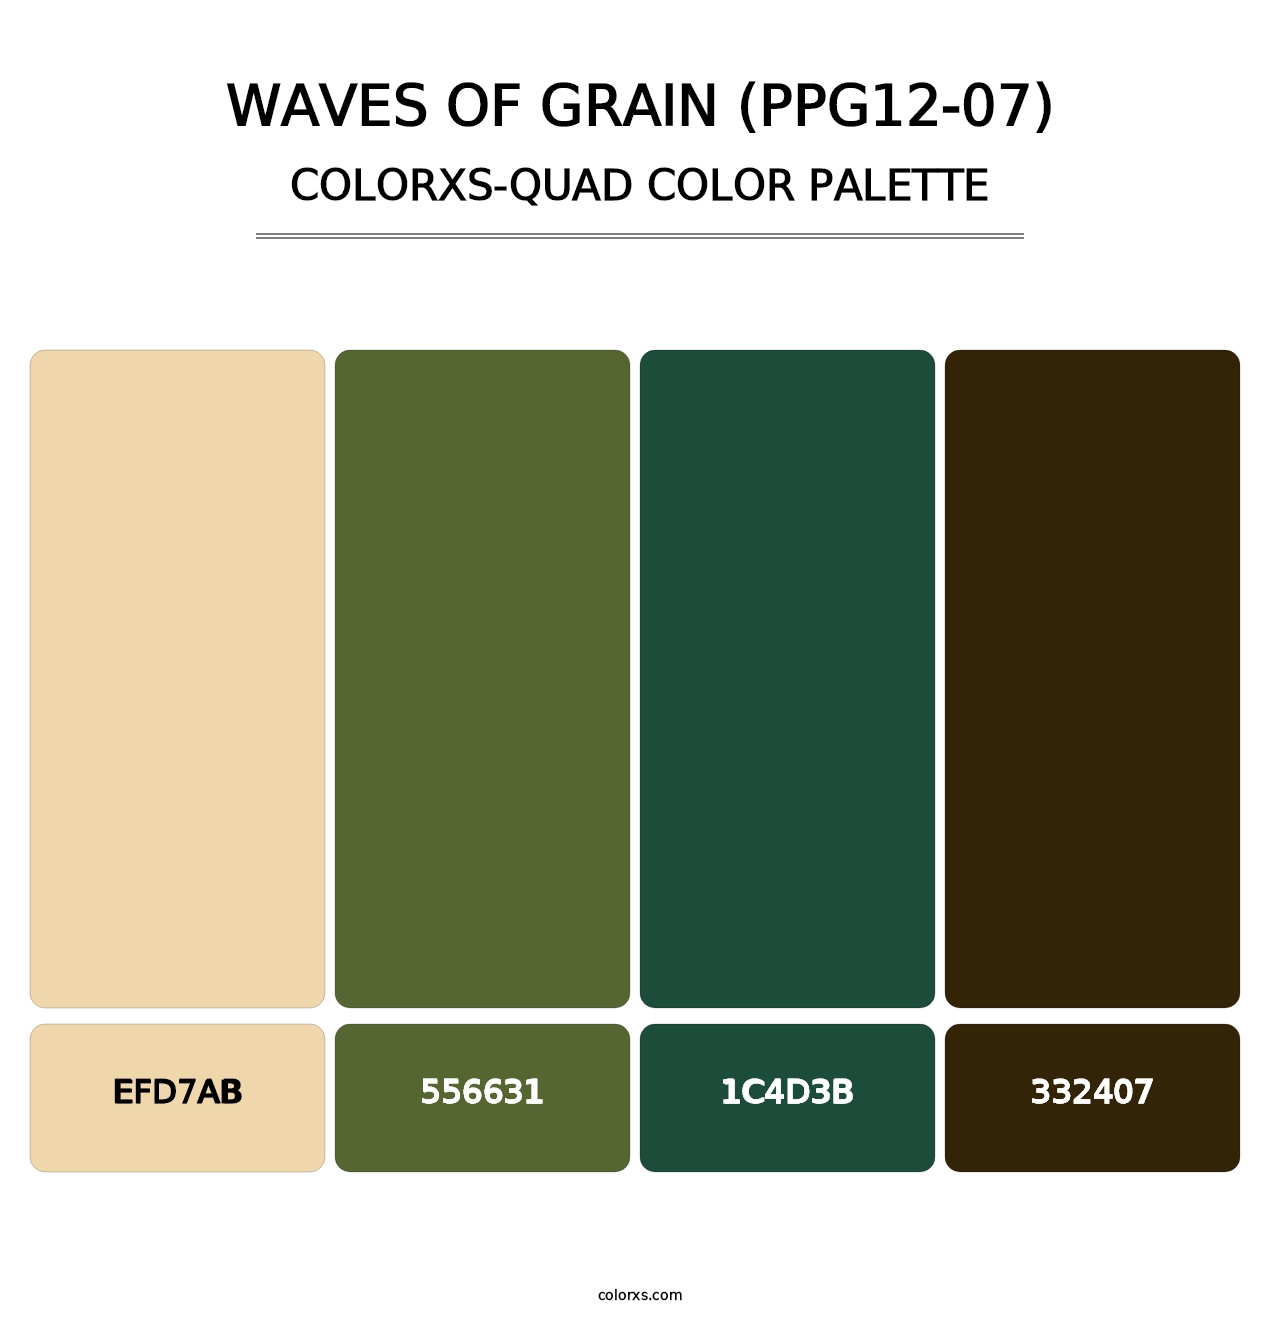 Waves Of Grain (PPG12-07) - Colorxs Quad Palette